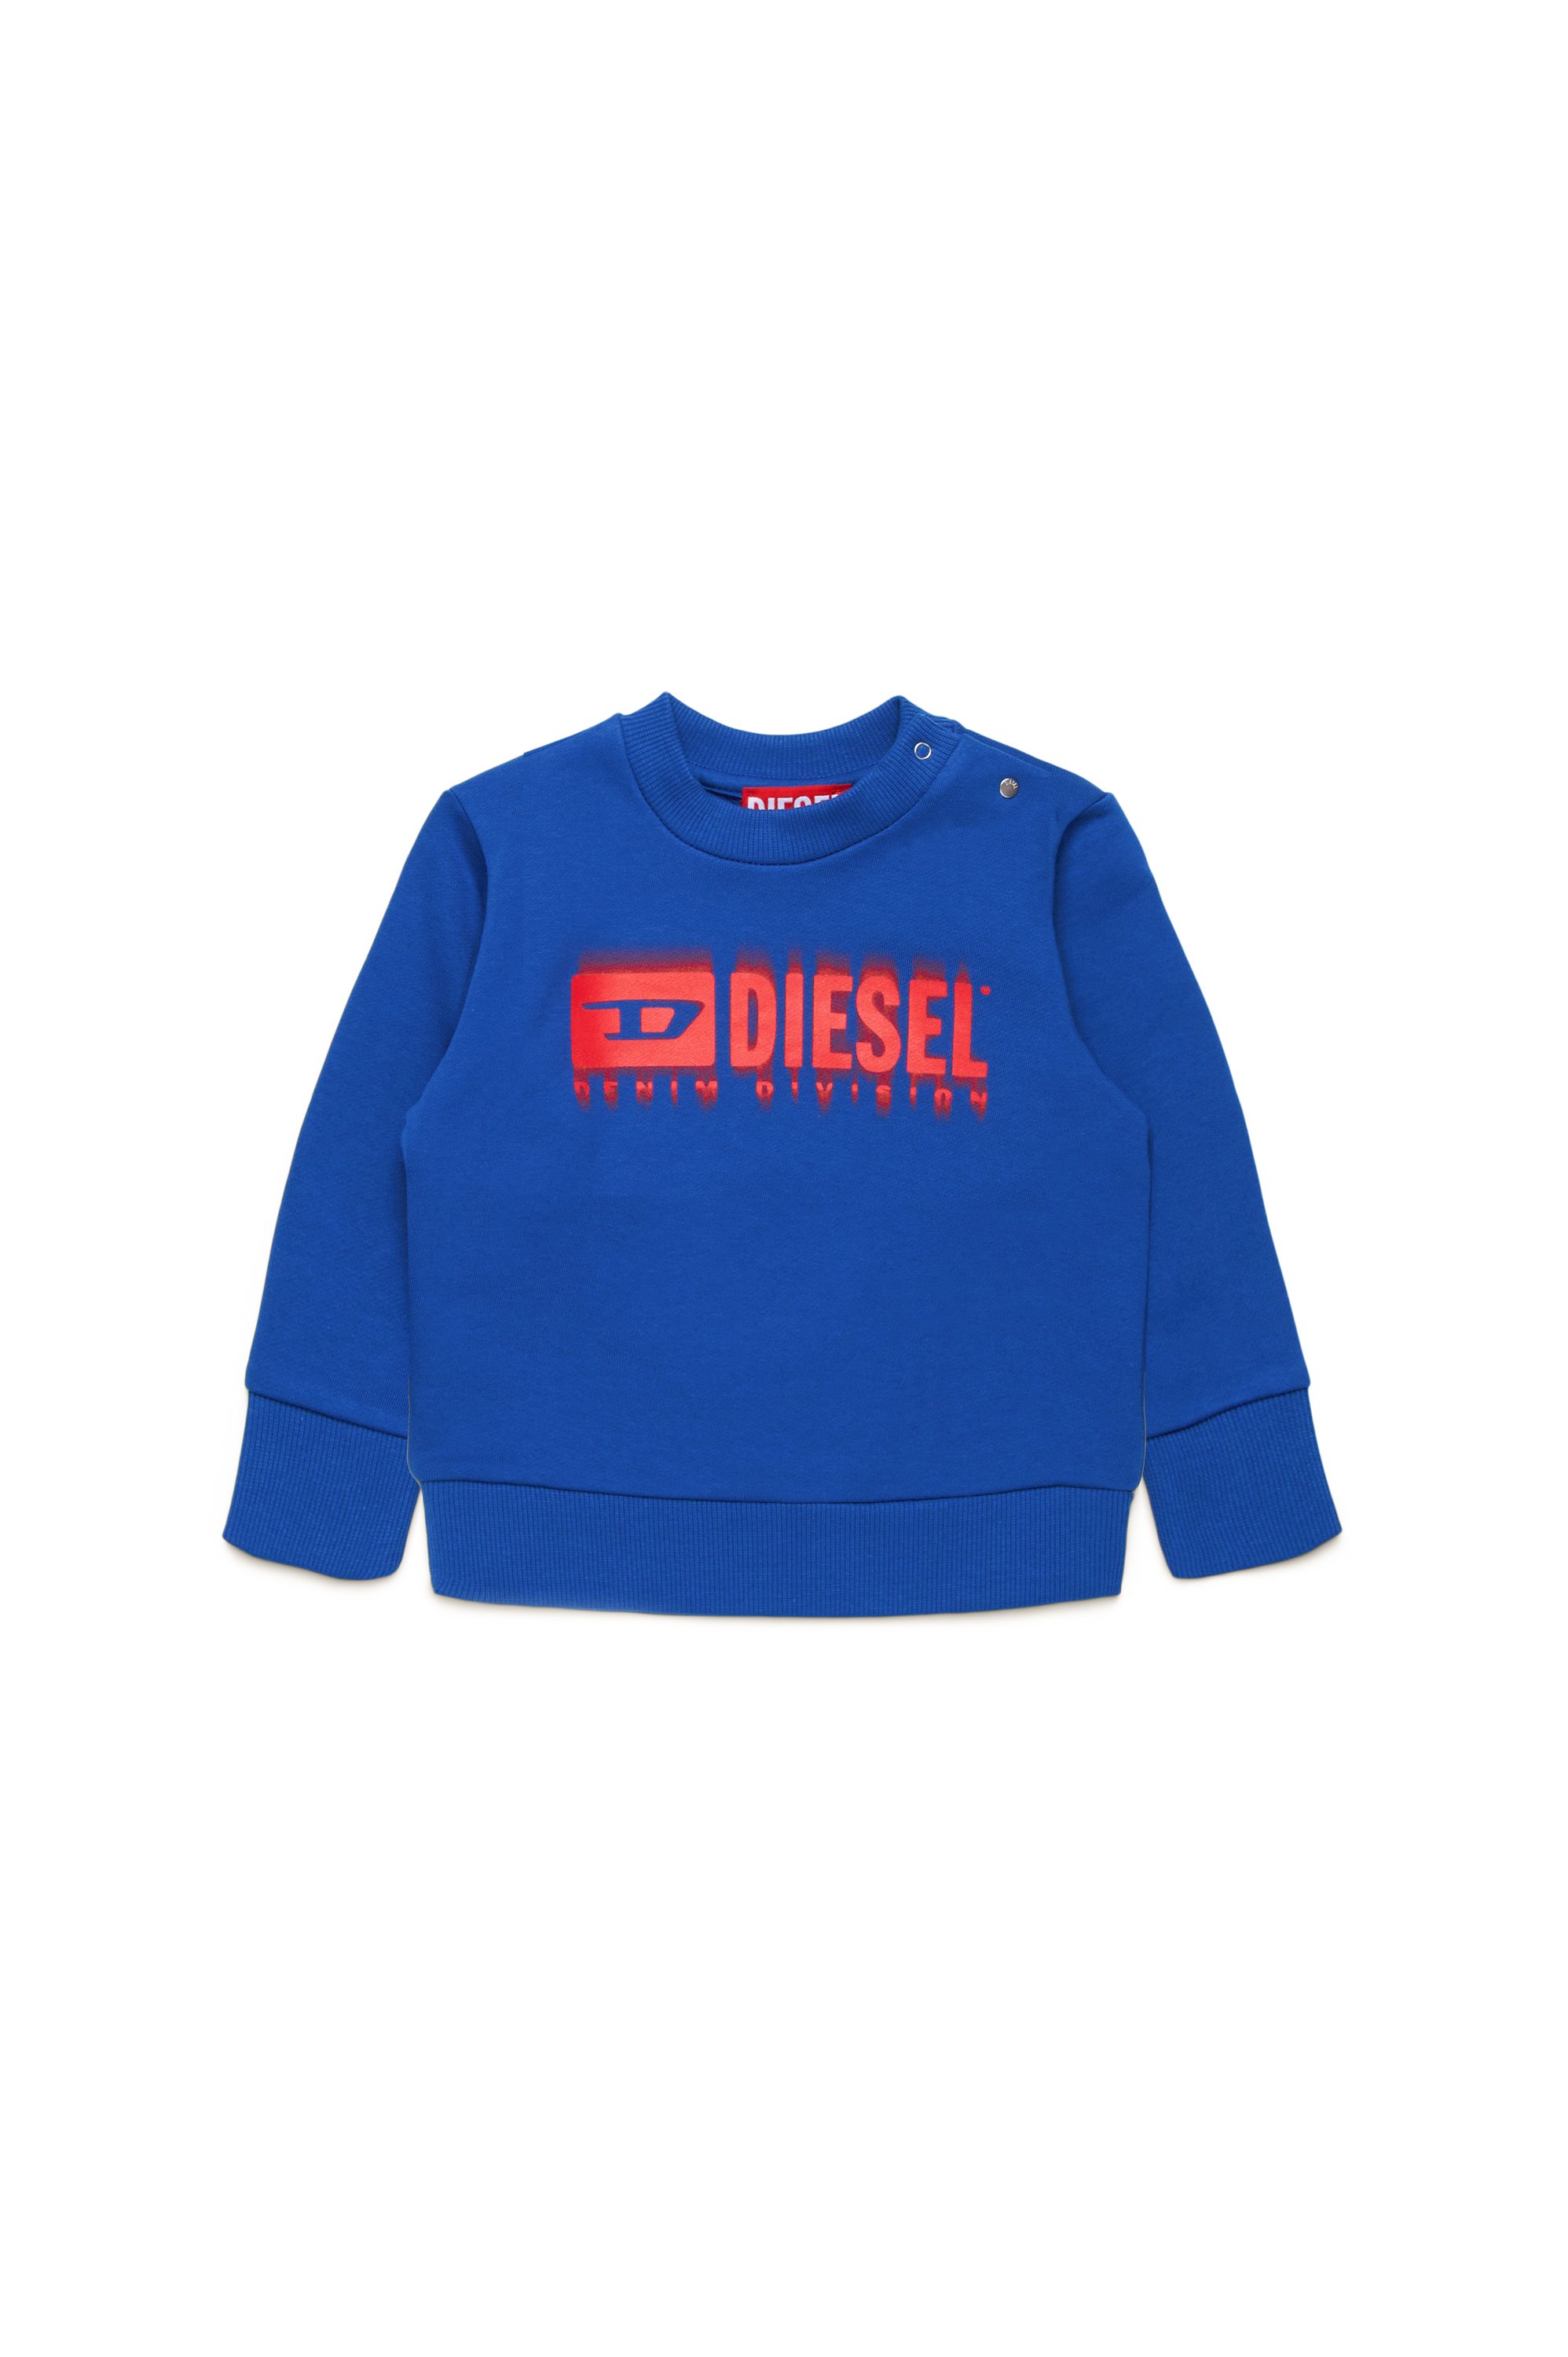 Diesel - SGINNL8B, Unisex Sweatshirt with smudged logo in Blue - Image 1